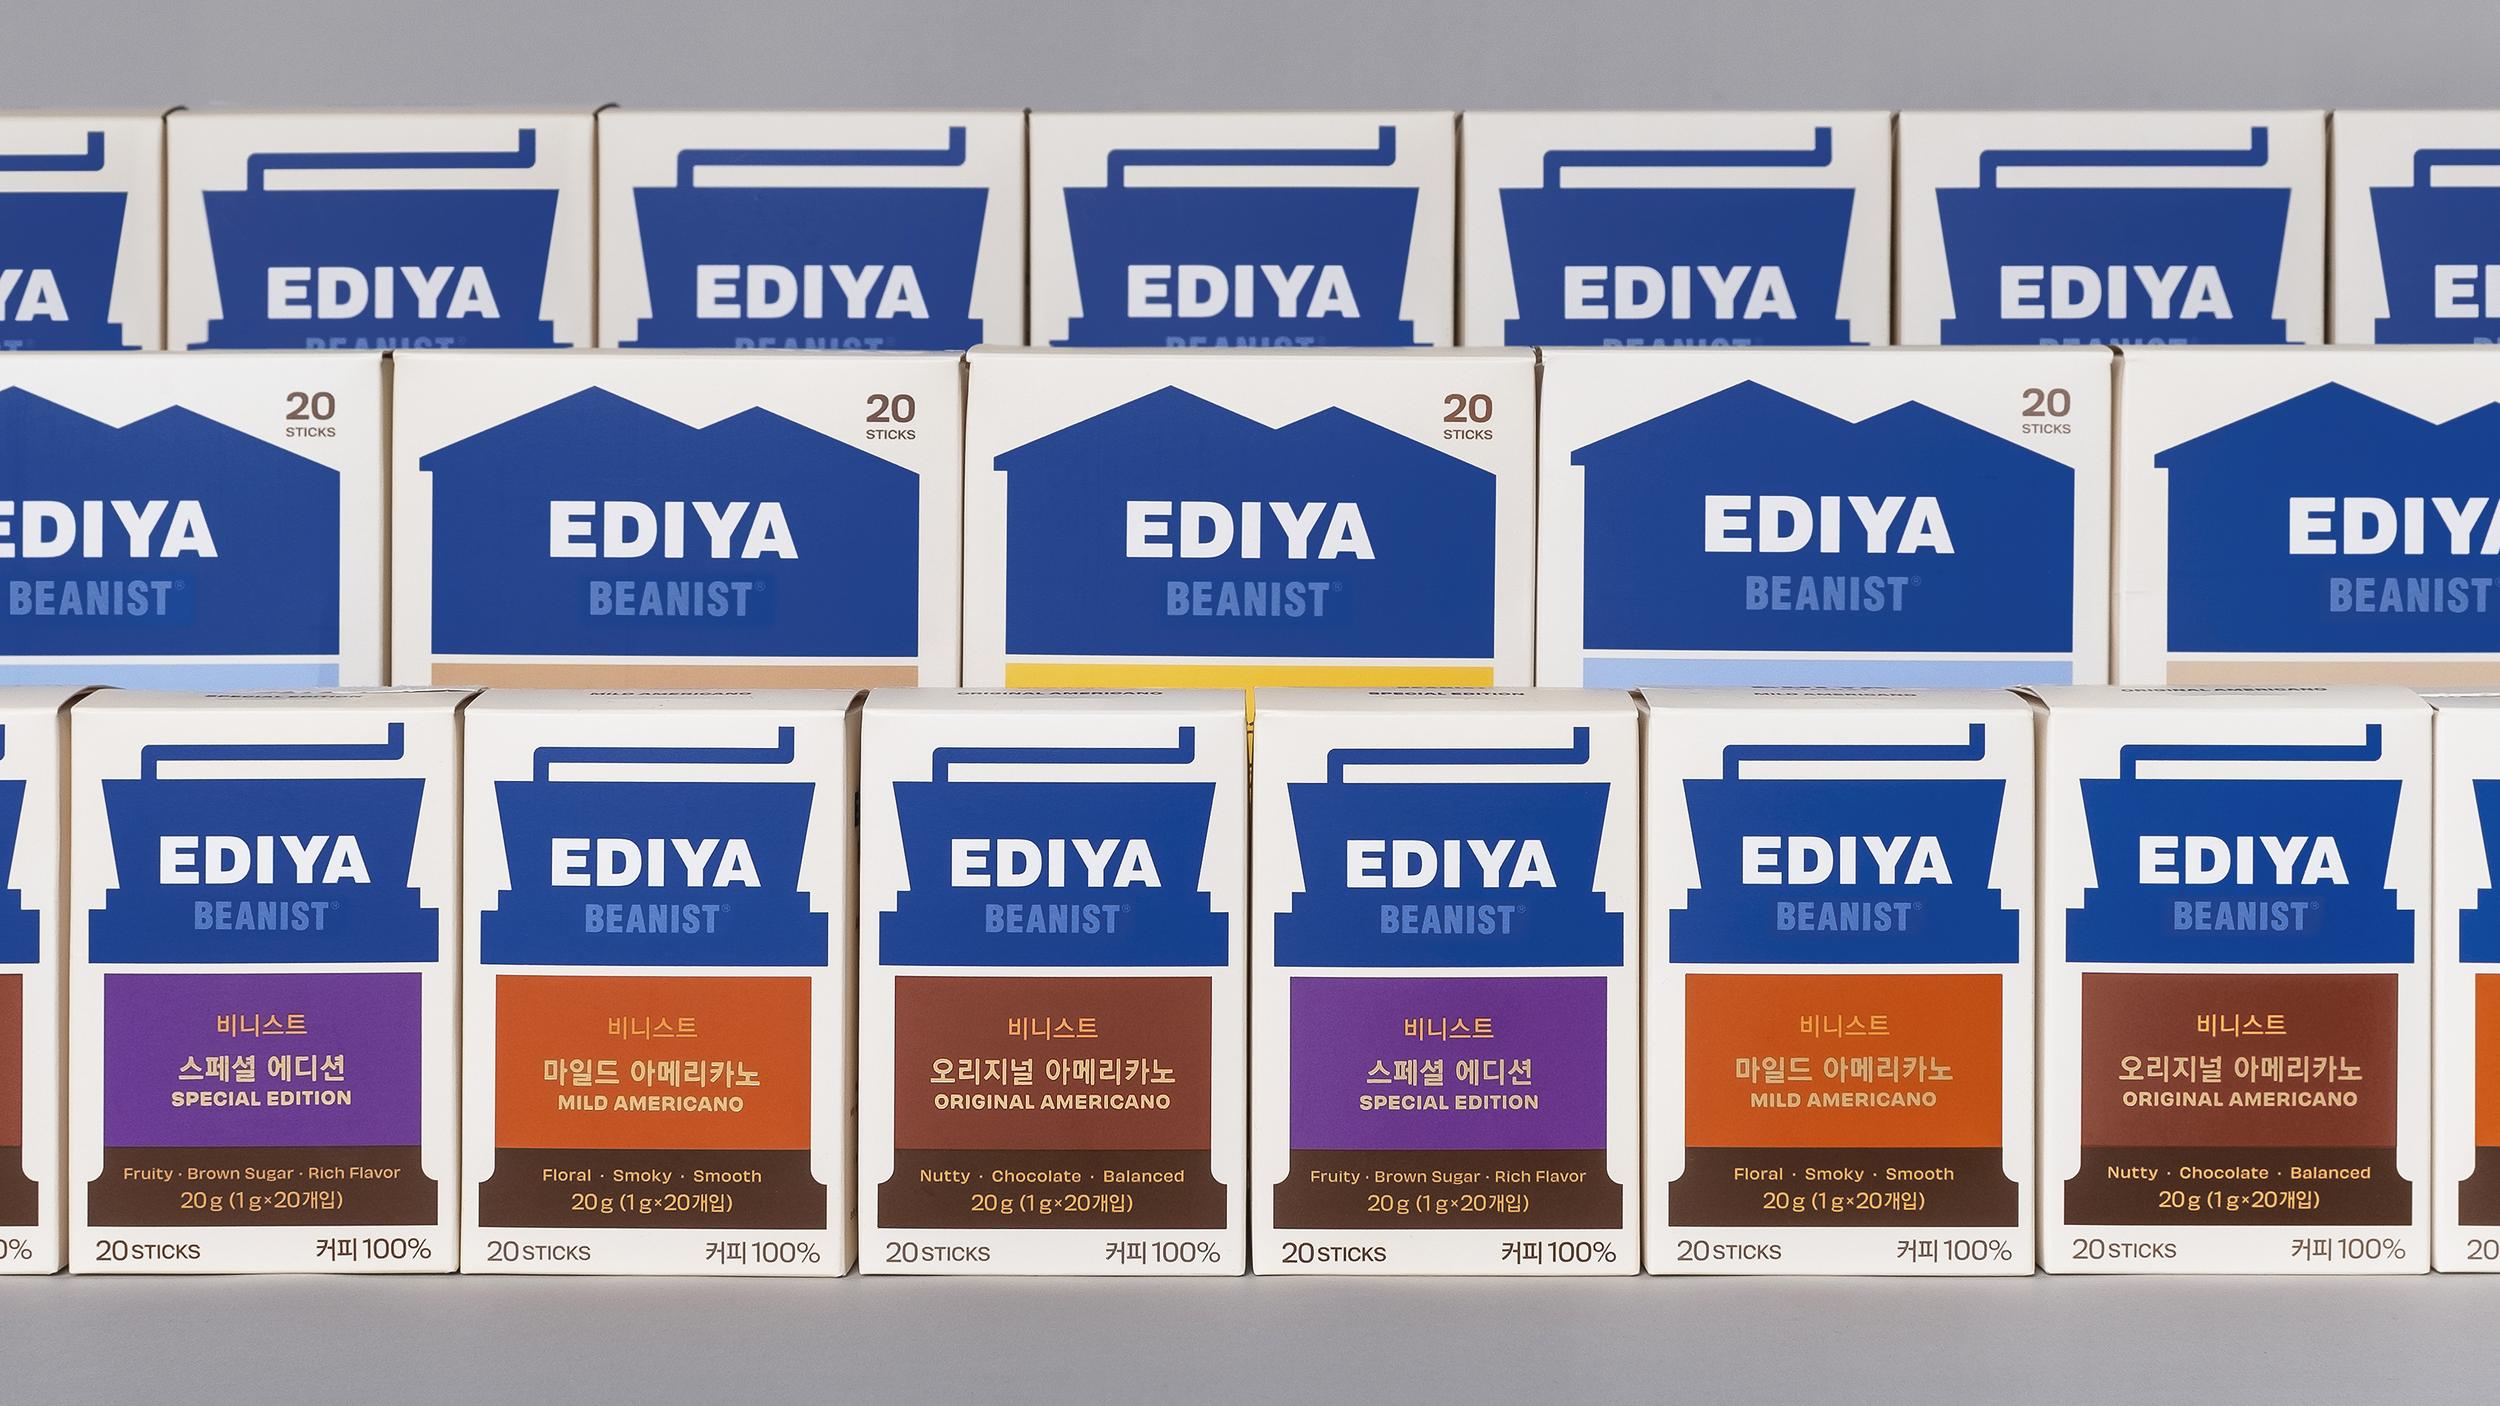 Coffee branding and packaging – Ediya Beanist by Studio fnt